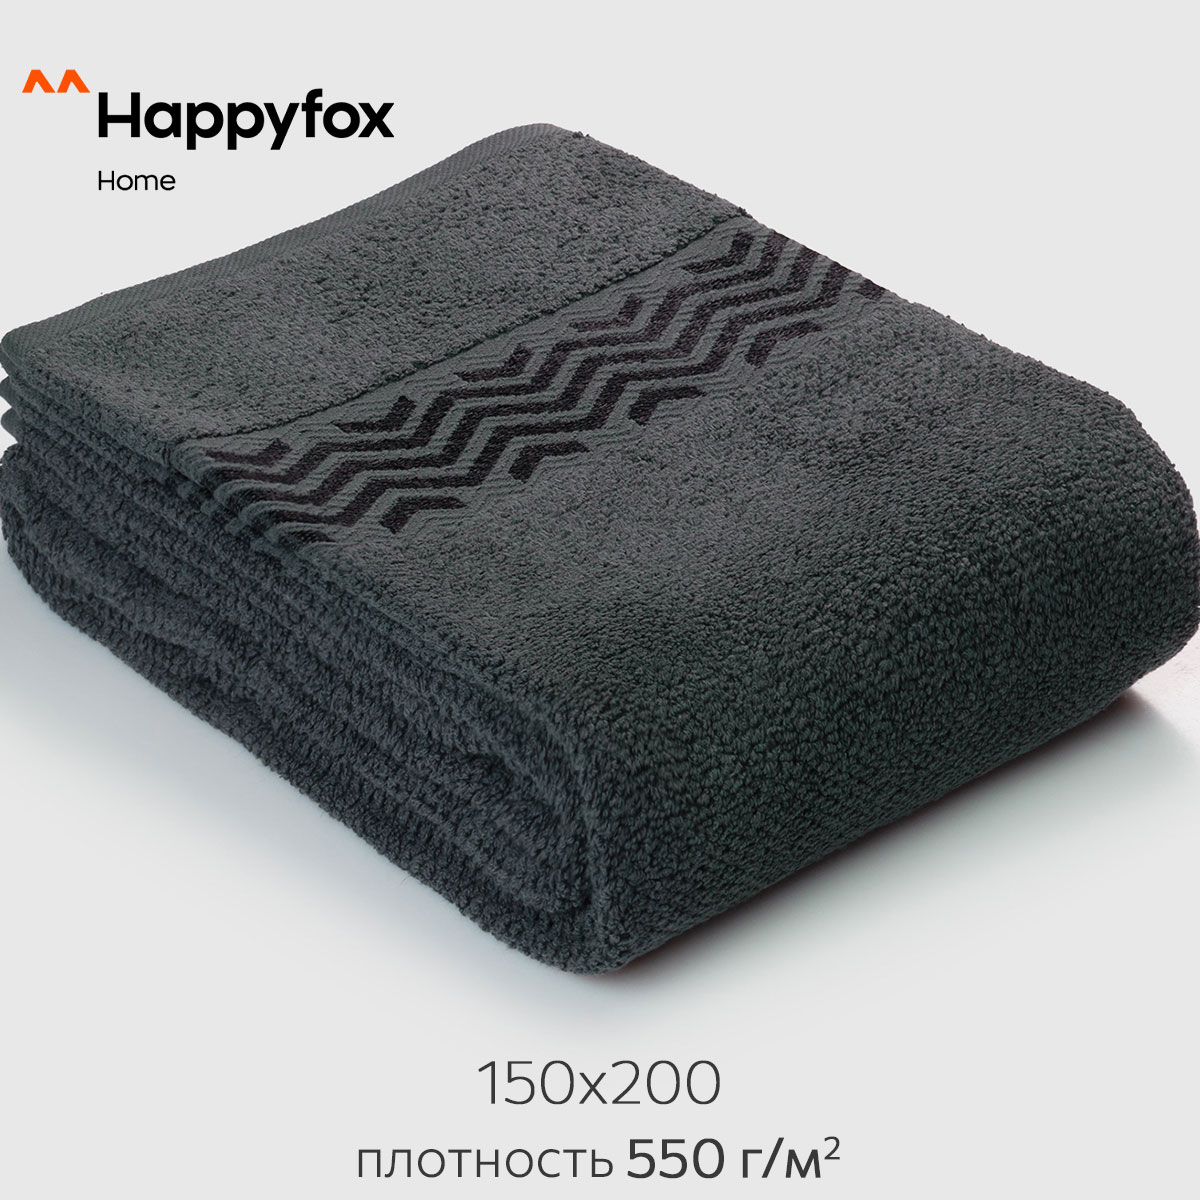 Простыня Happy Fox Home HF150200LARA графит 150X200